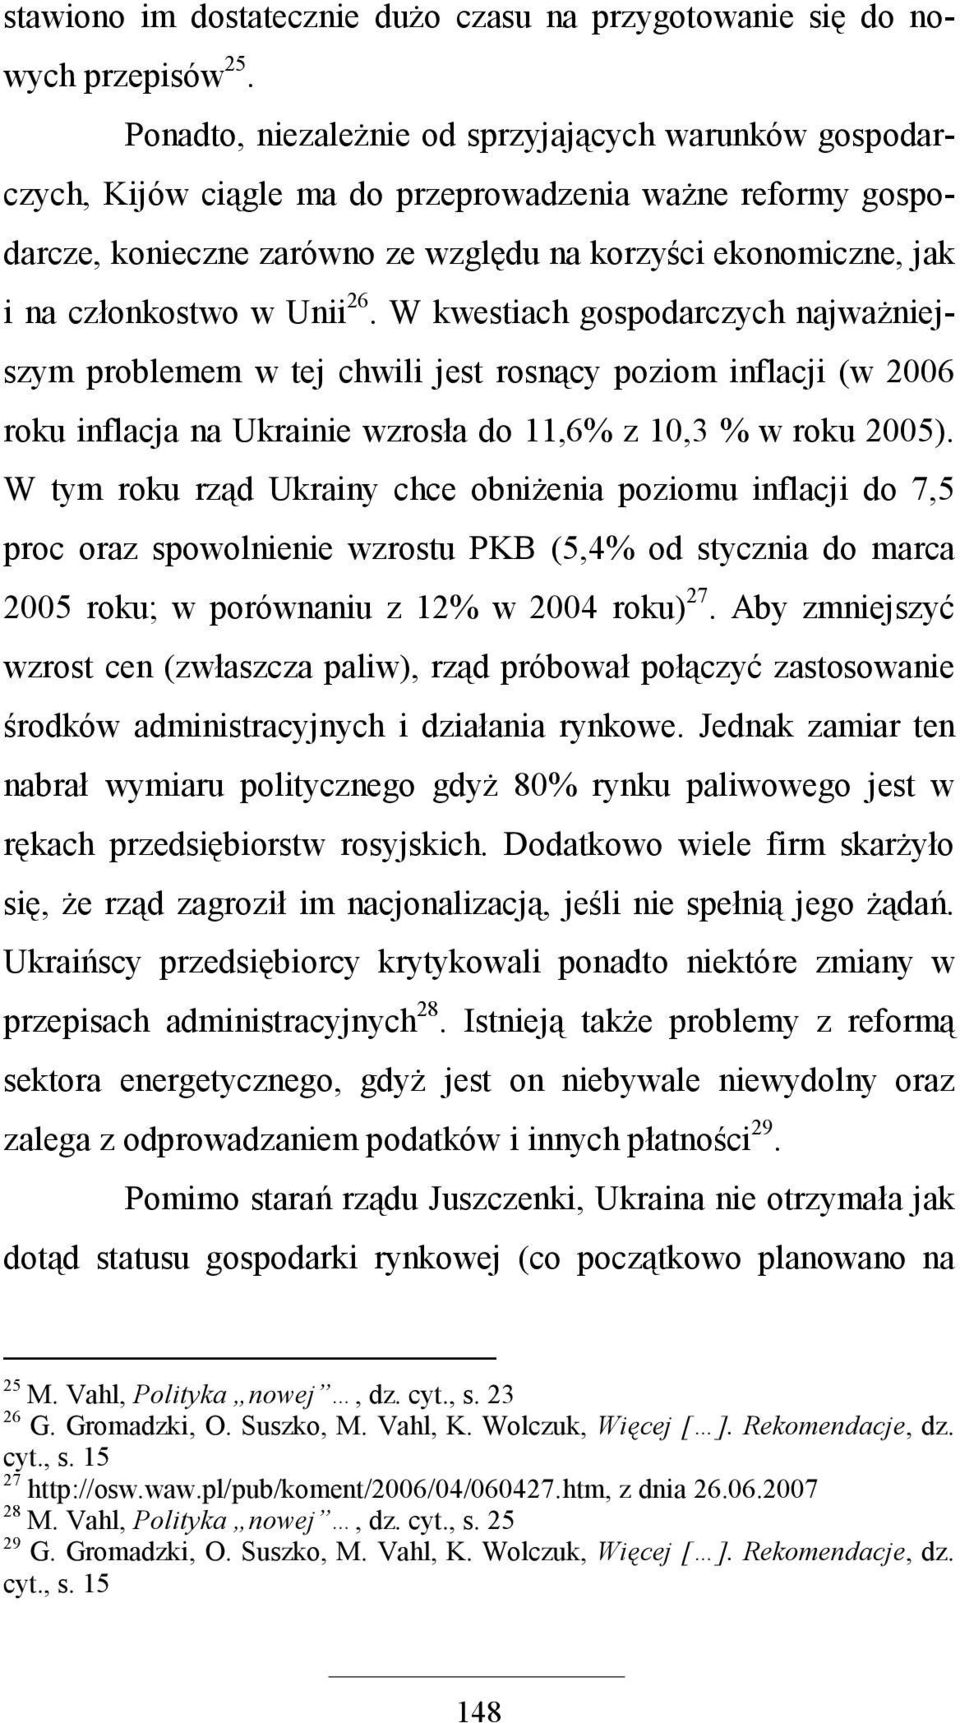 w Unii 26. W kwestiach gospodarczych najwaŝniejszym problemem w tej chwili jest rosnący poziom inflacji (w 2006 roku inflacja na Ukrainie wzrosła do 11,6% z 10,3 % w roku 2005).